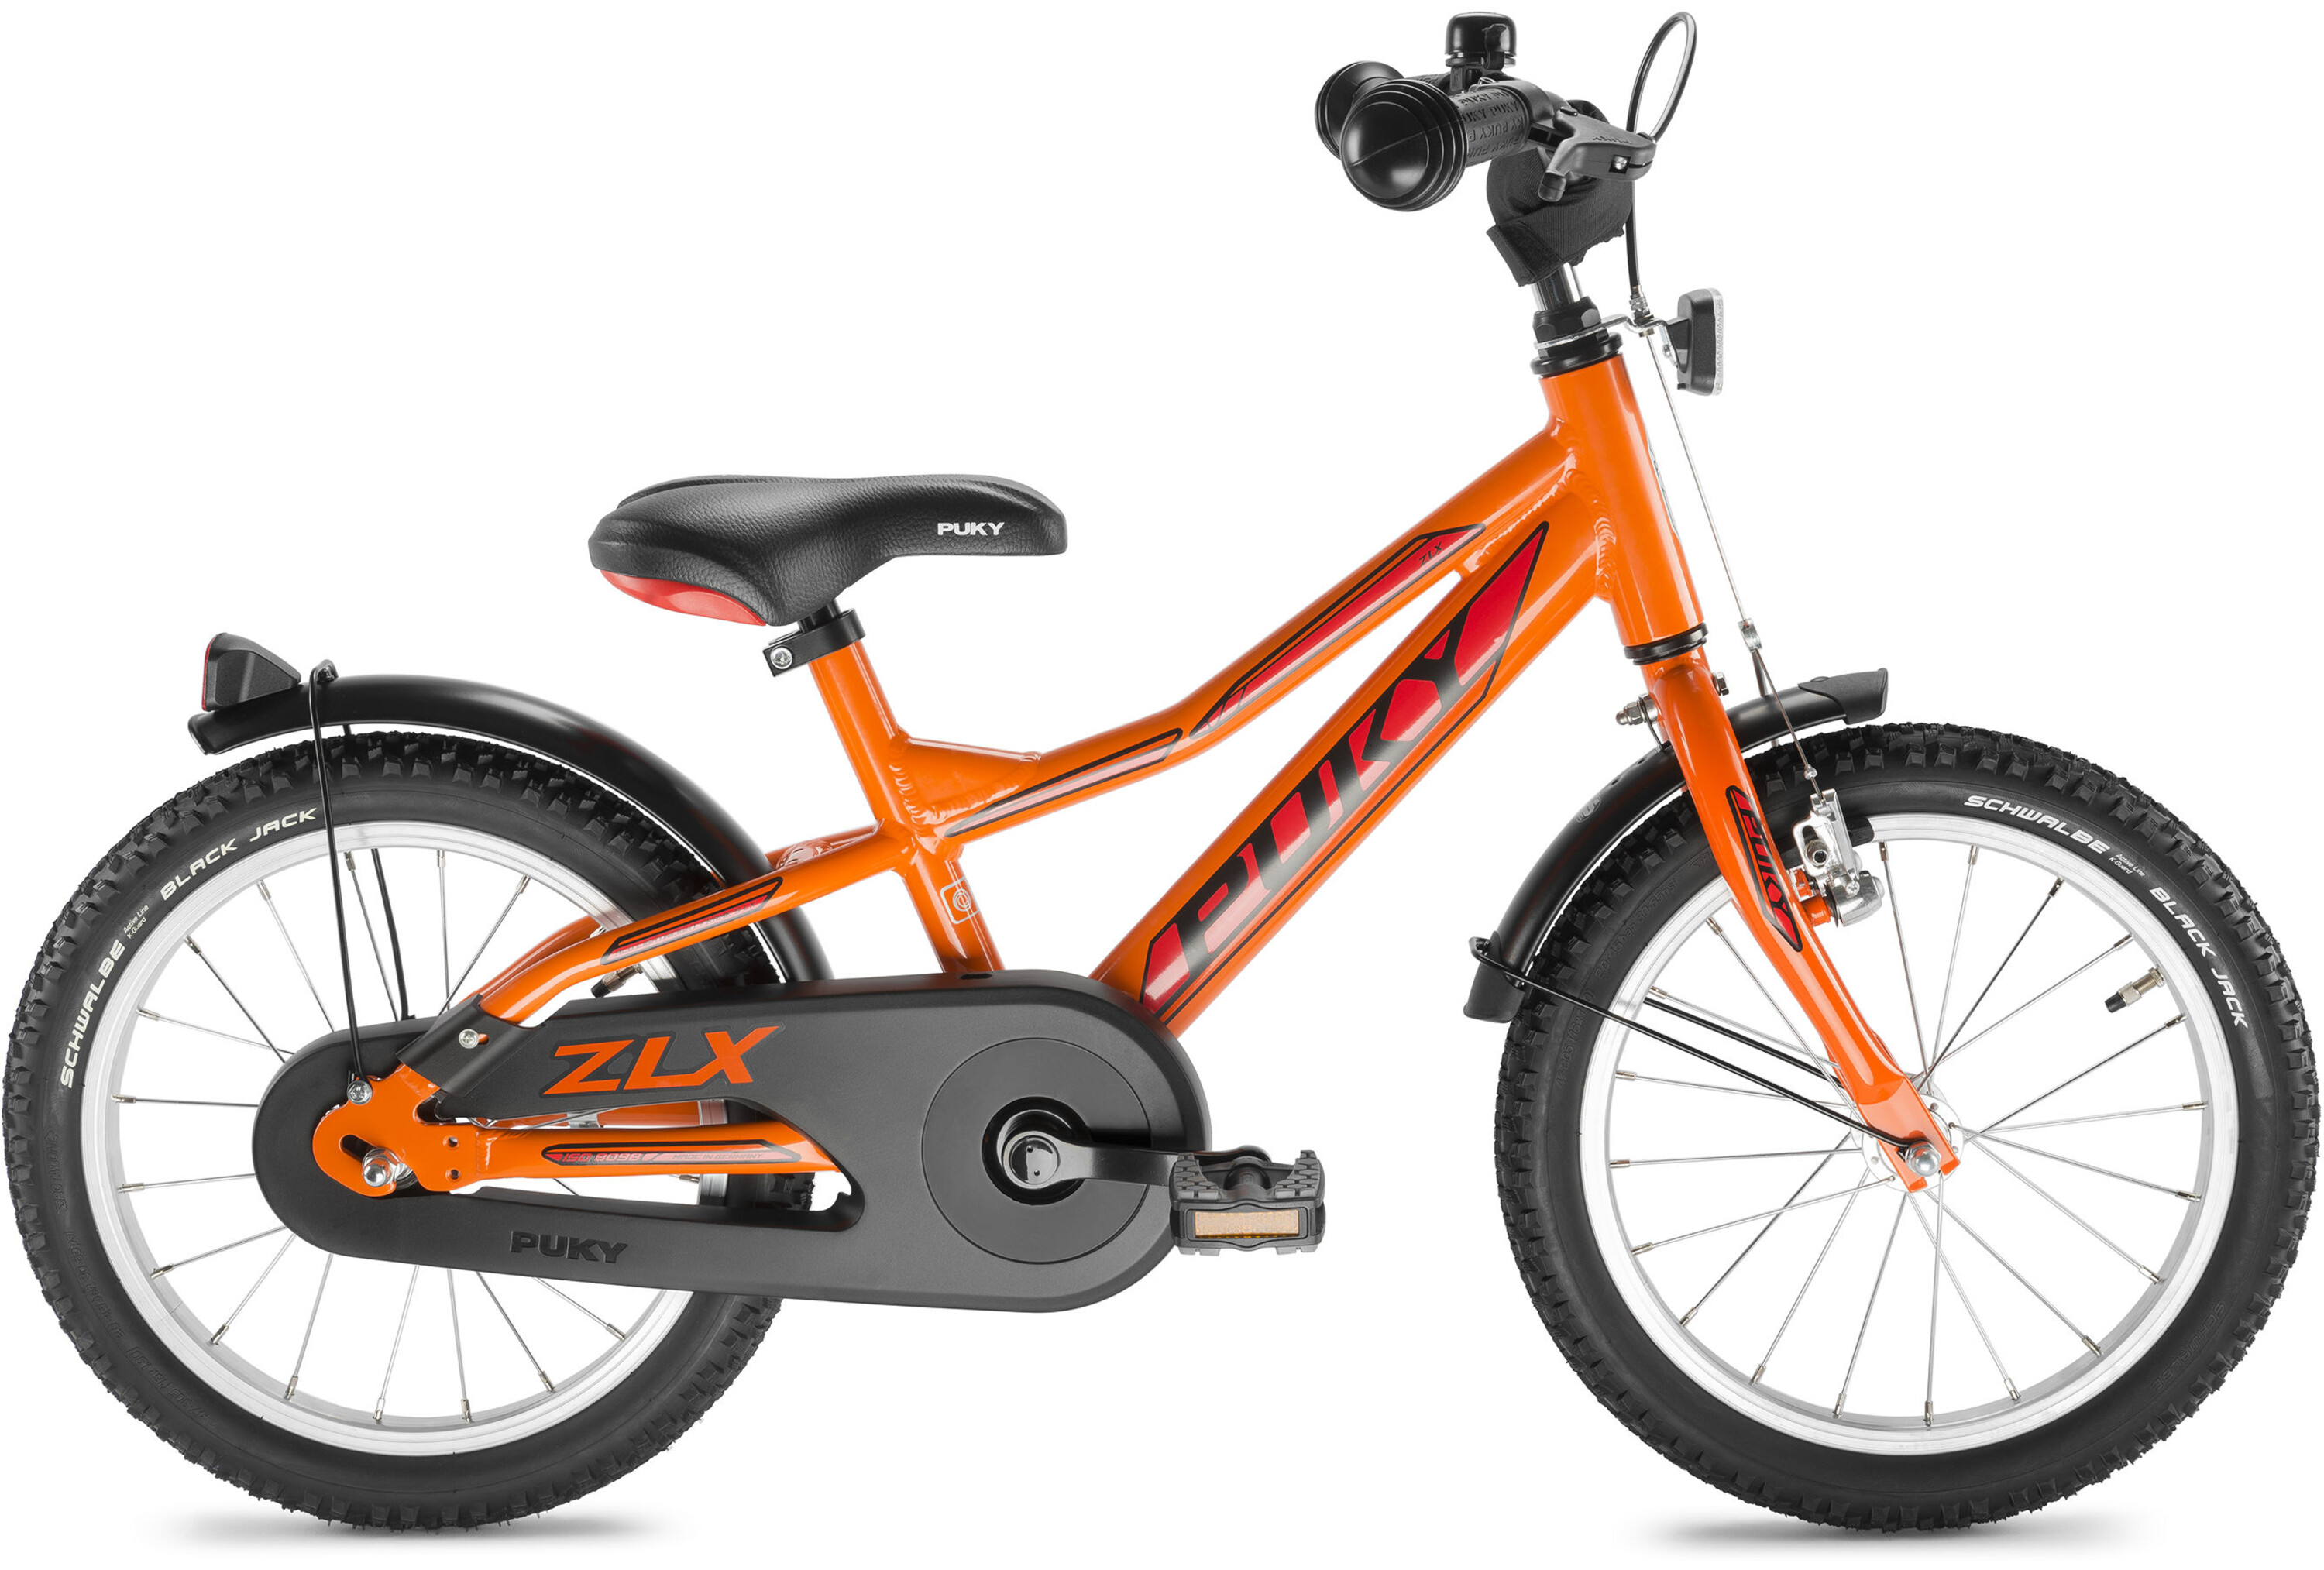 Puky ZLX 181 Alu racing orange online kaufen fahrrad.de